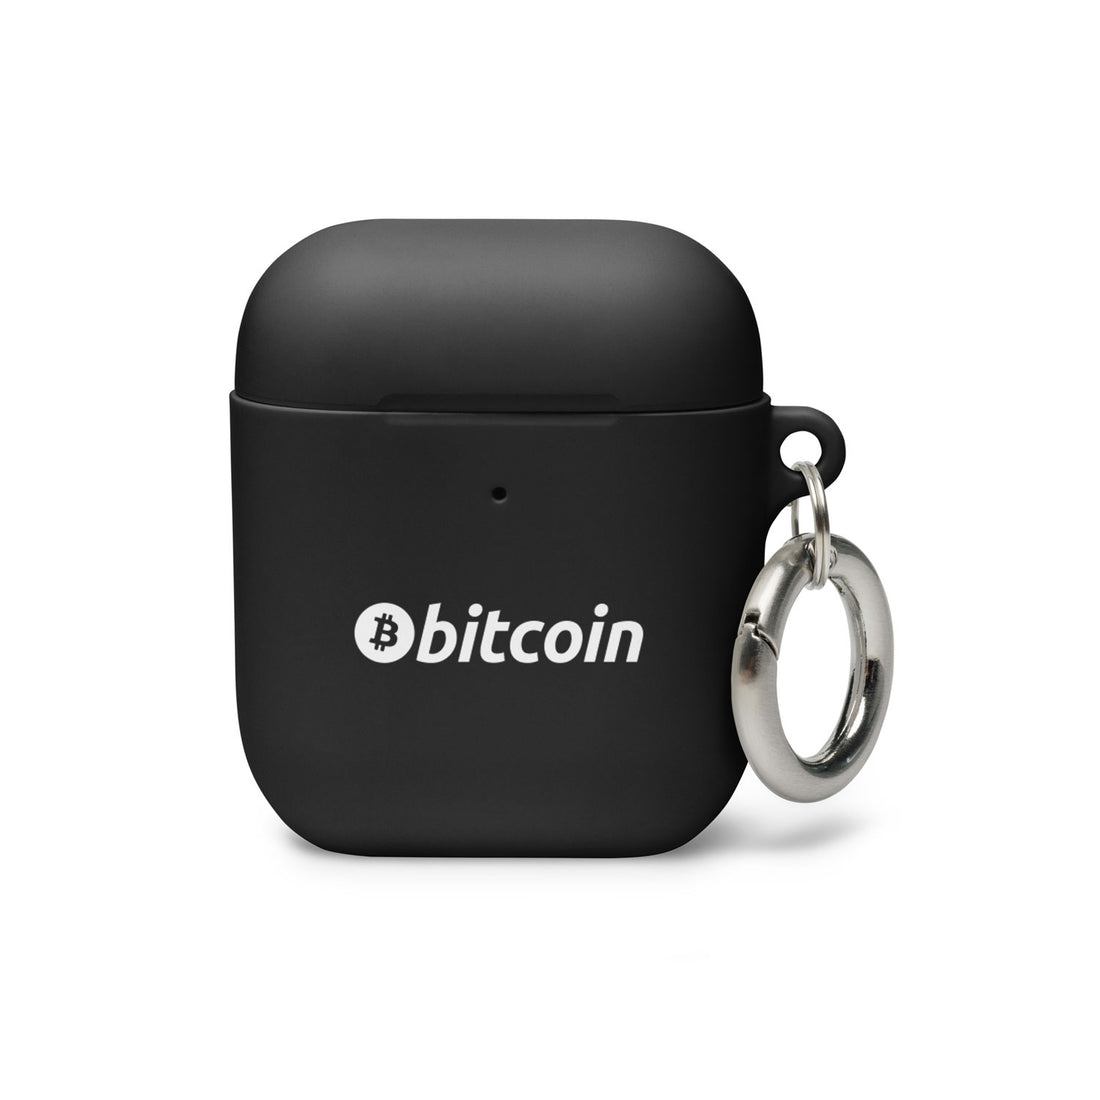 bitcoin btc logo airpods case black